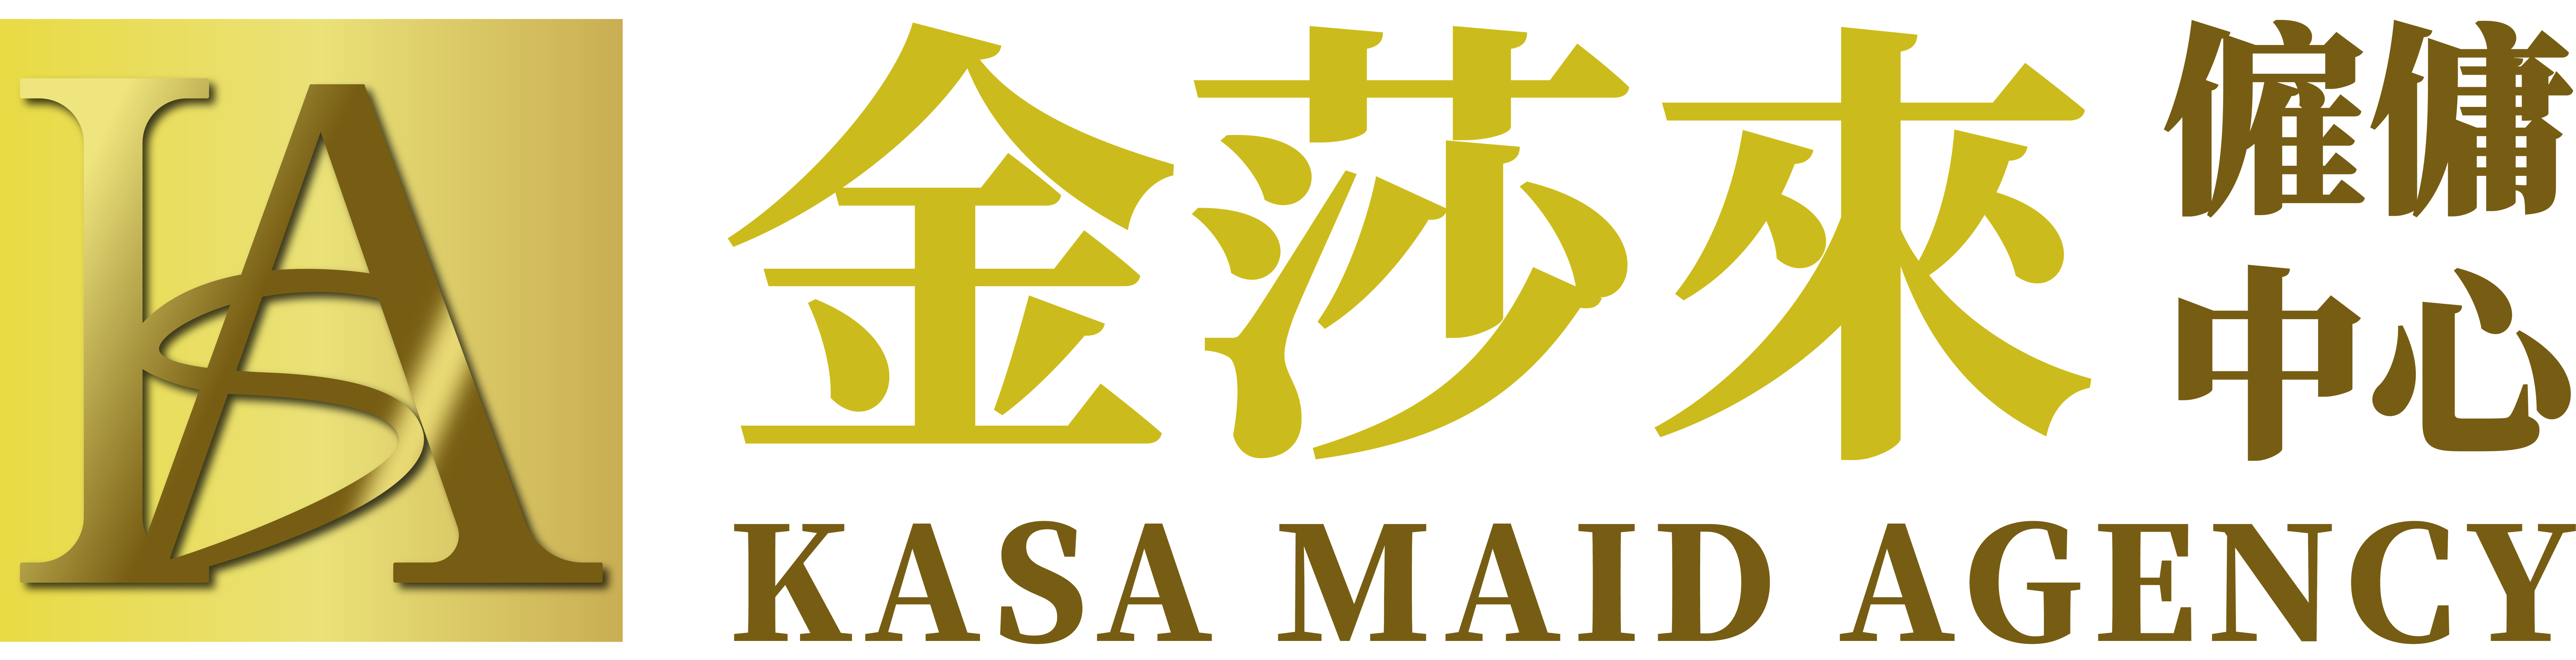 Kasa logo_for website